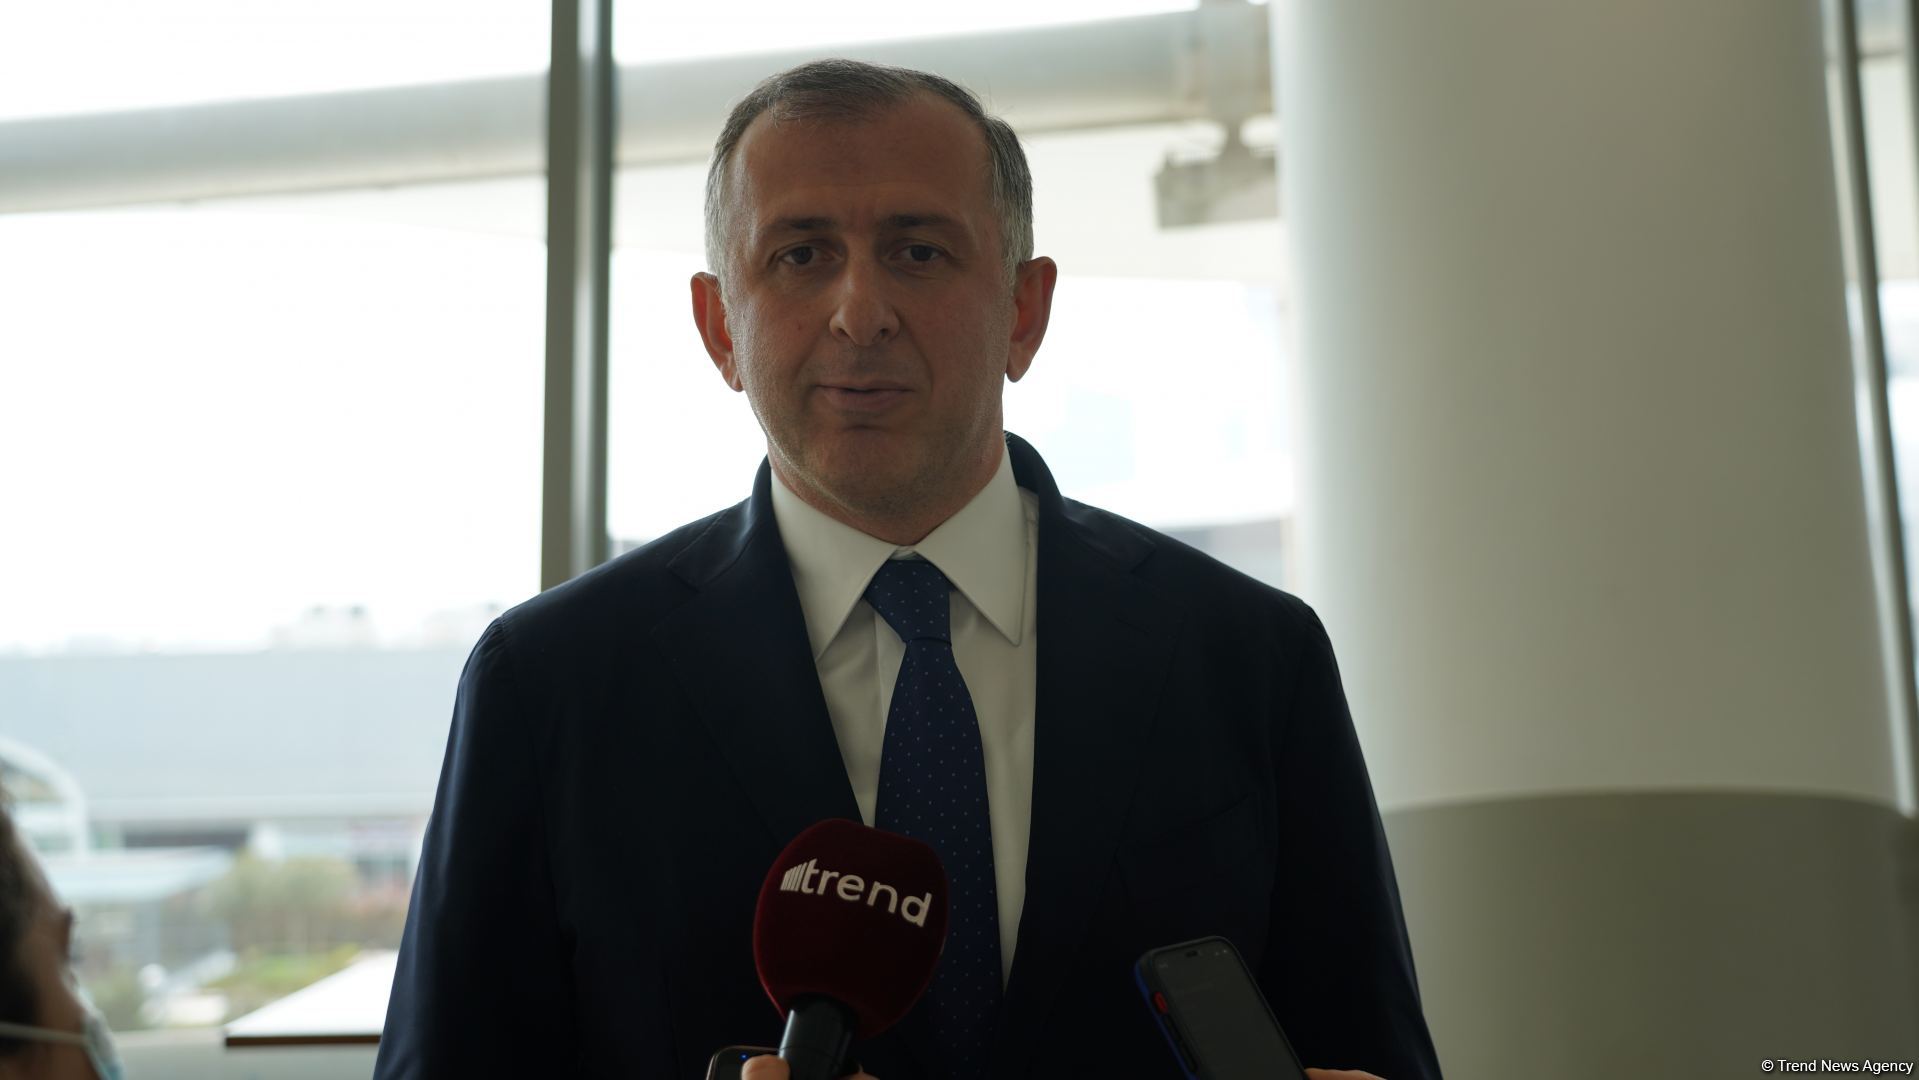 Отношения Азербайджана и Грузии в период пандемии стали развиваться более активно - посол